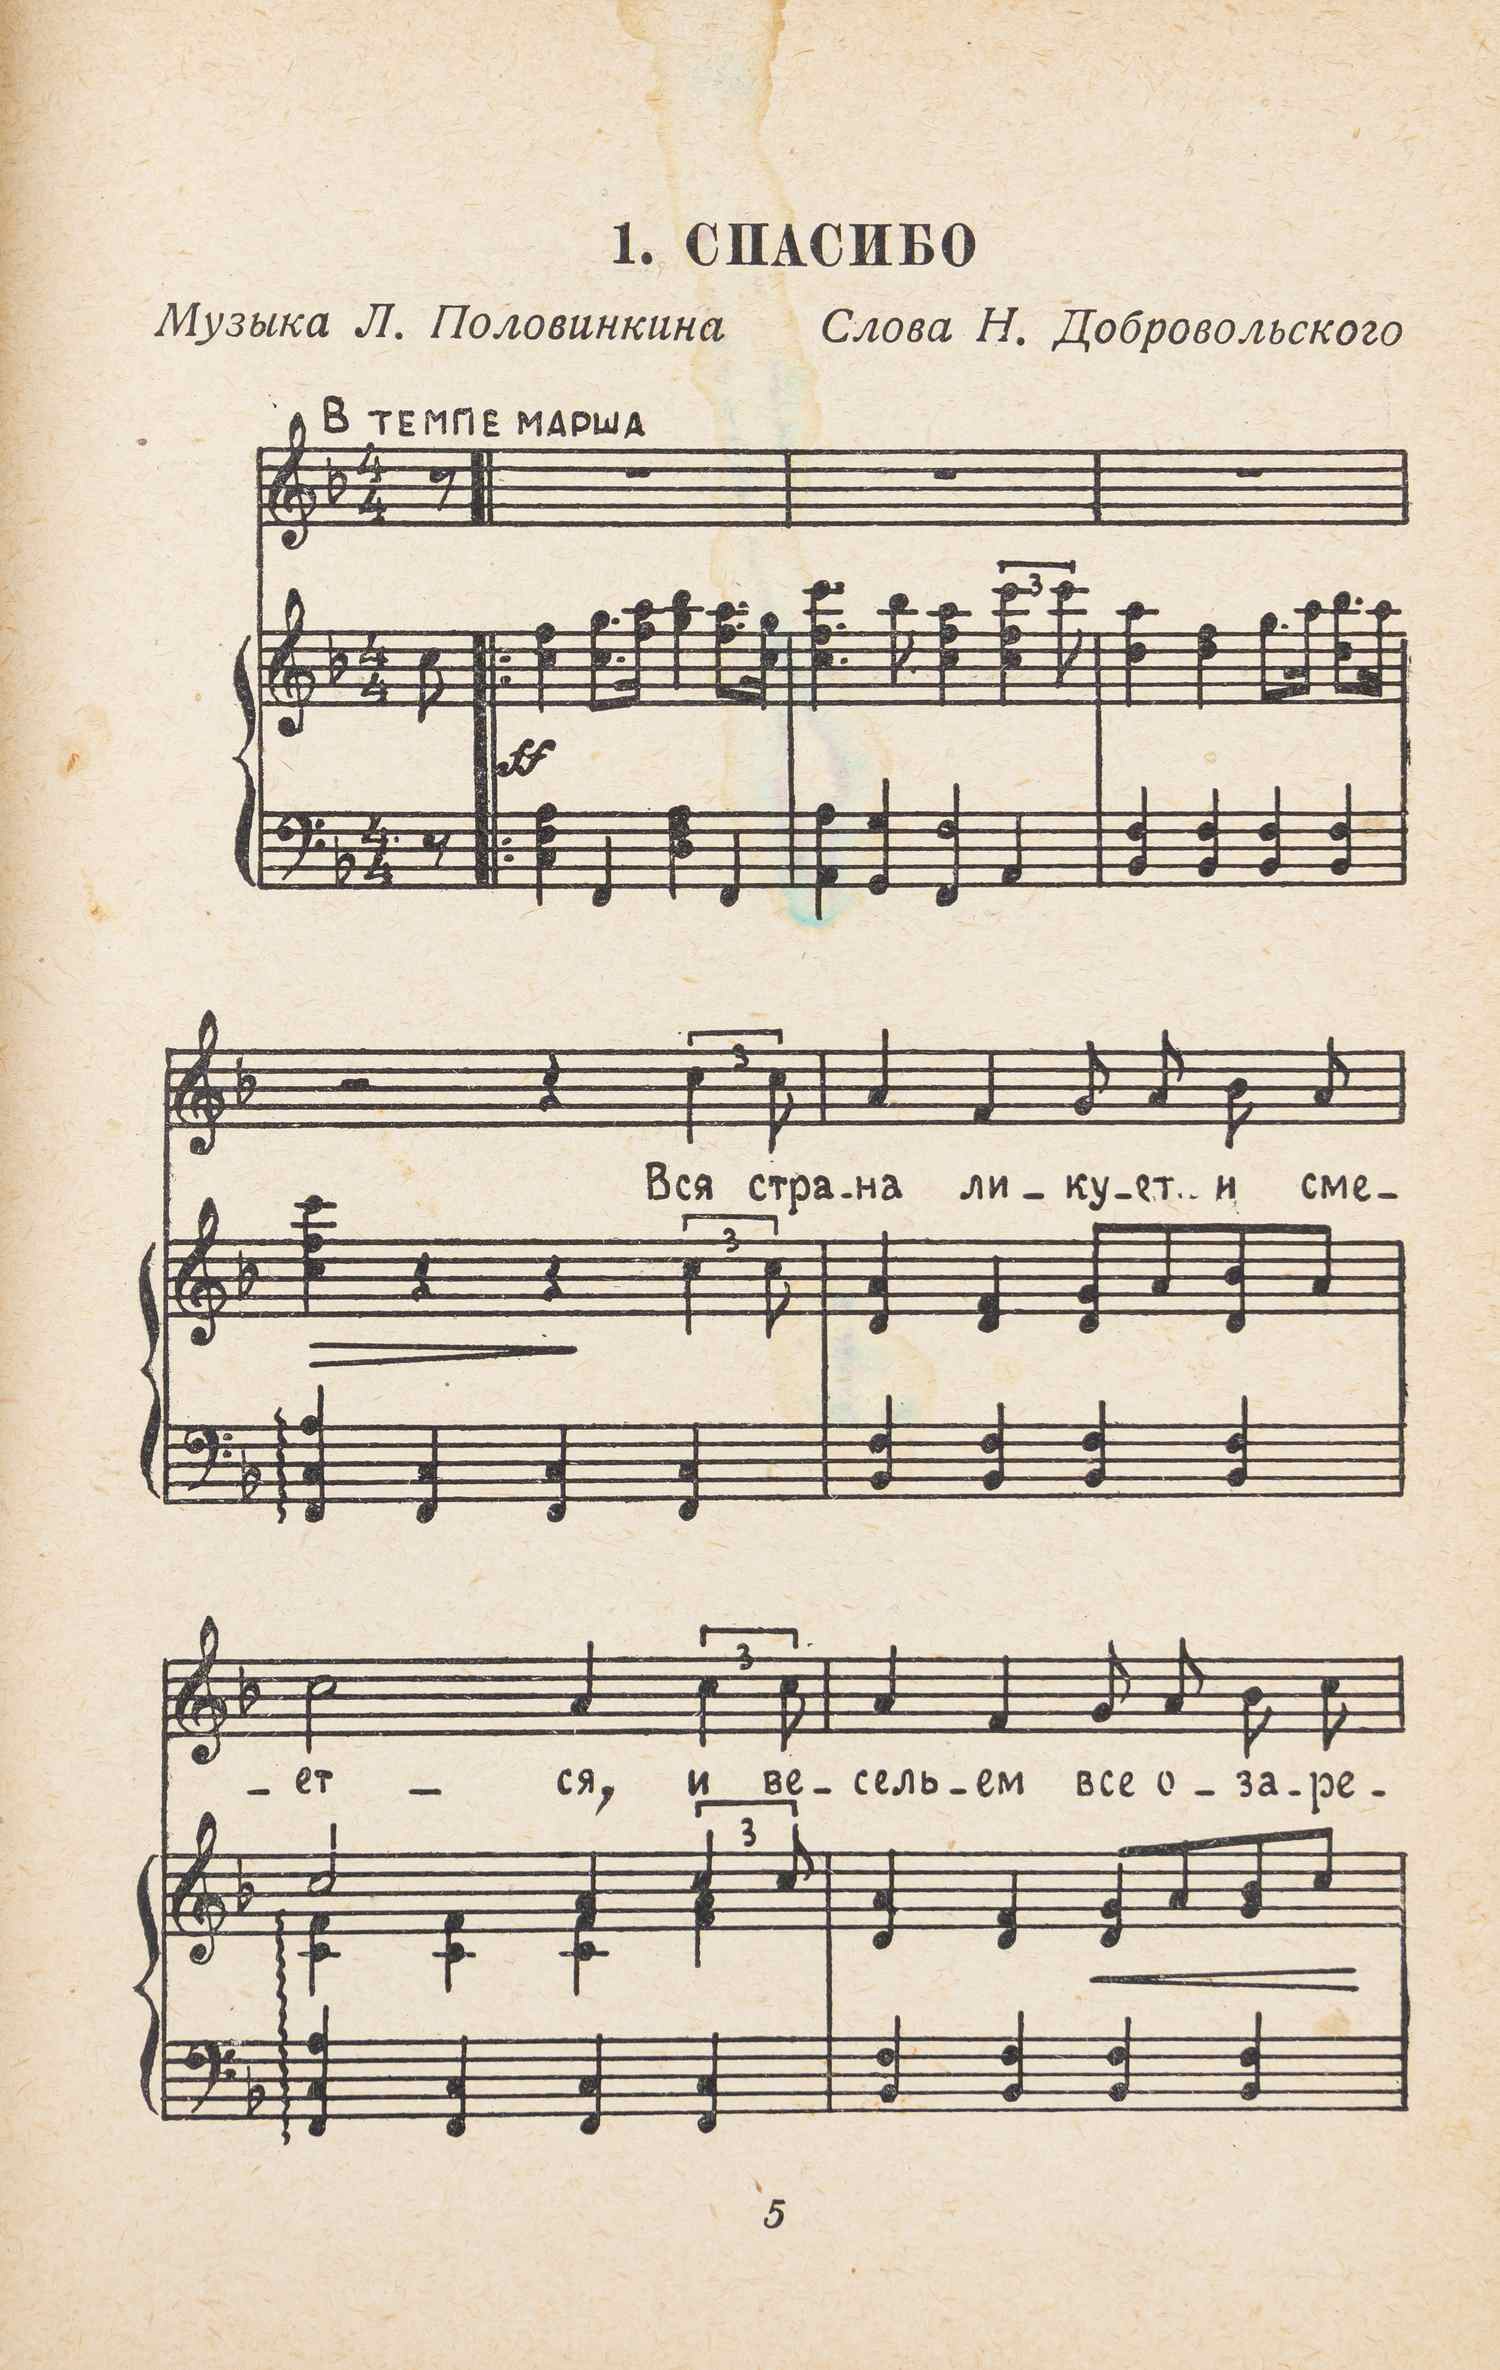 Наши песни. Сборник песен для детей младшего возраста (М.-Л., 1937).